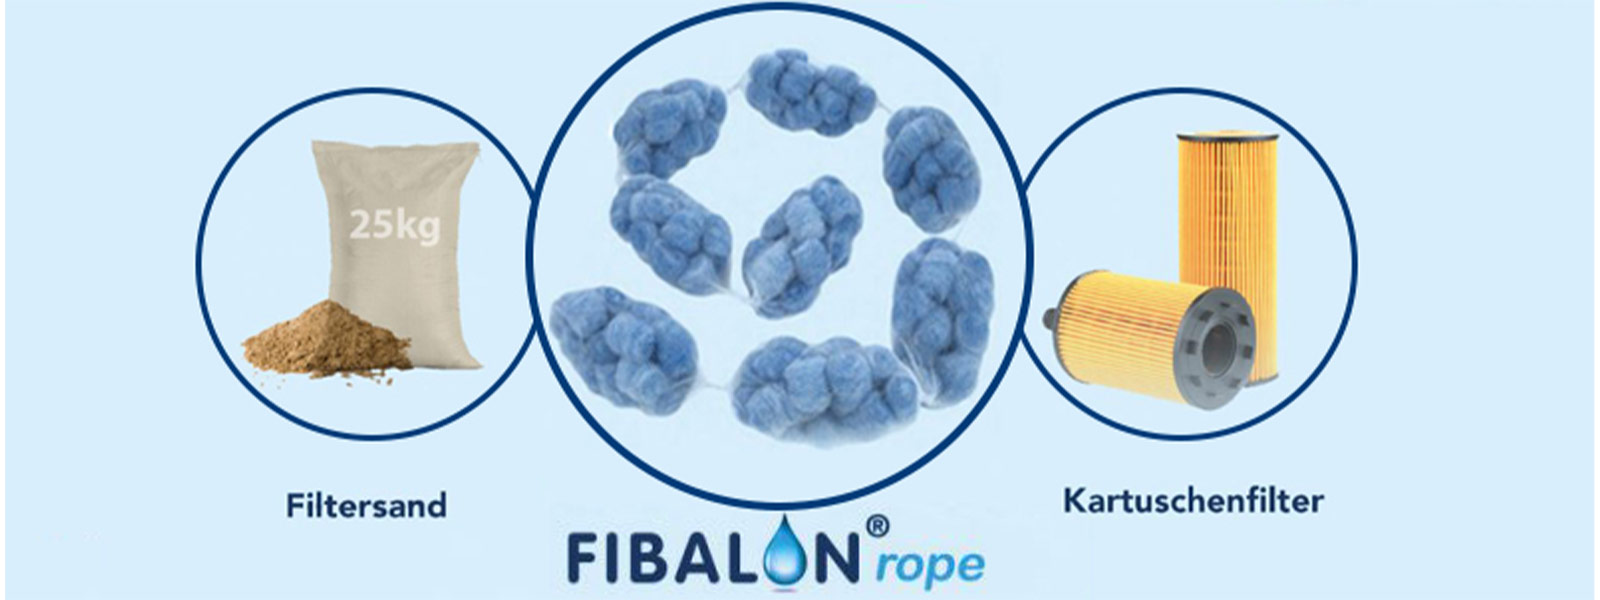 Fibalon Rope-polymère Fibre Filtre comme Top Remplacement Pour filtersand et filtrant 